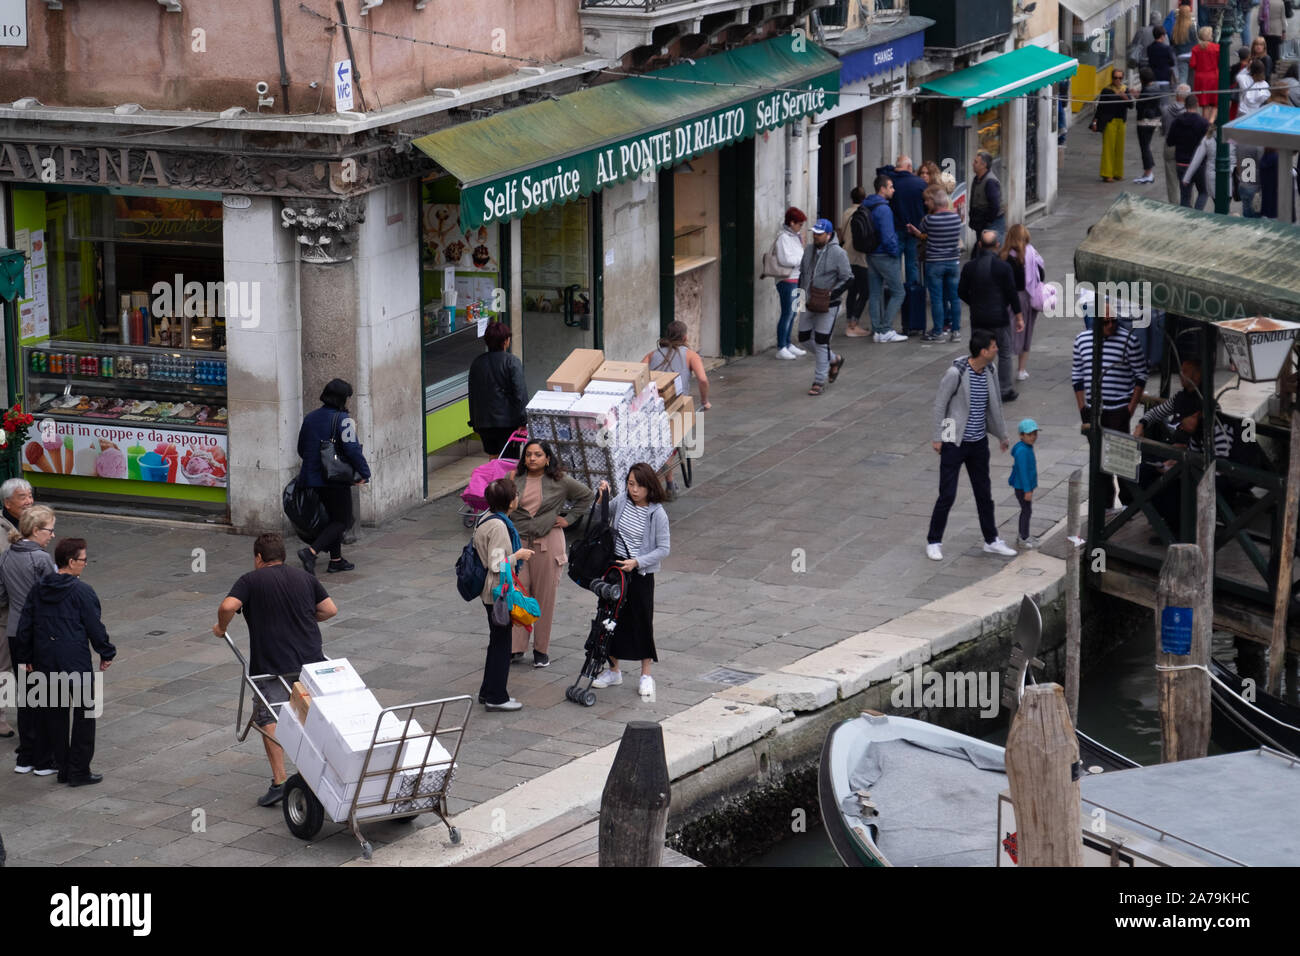 Les livraisons sont faites par les hommes en tirant ou poussant des charrettes à bras dans les rues et les ponts de Venise, au milieu des centaines de touristes. Banque D'Images